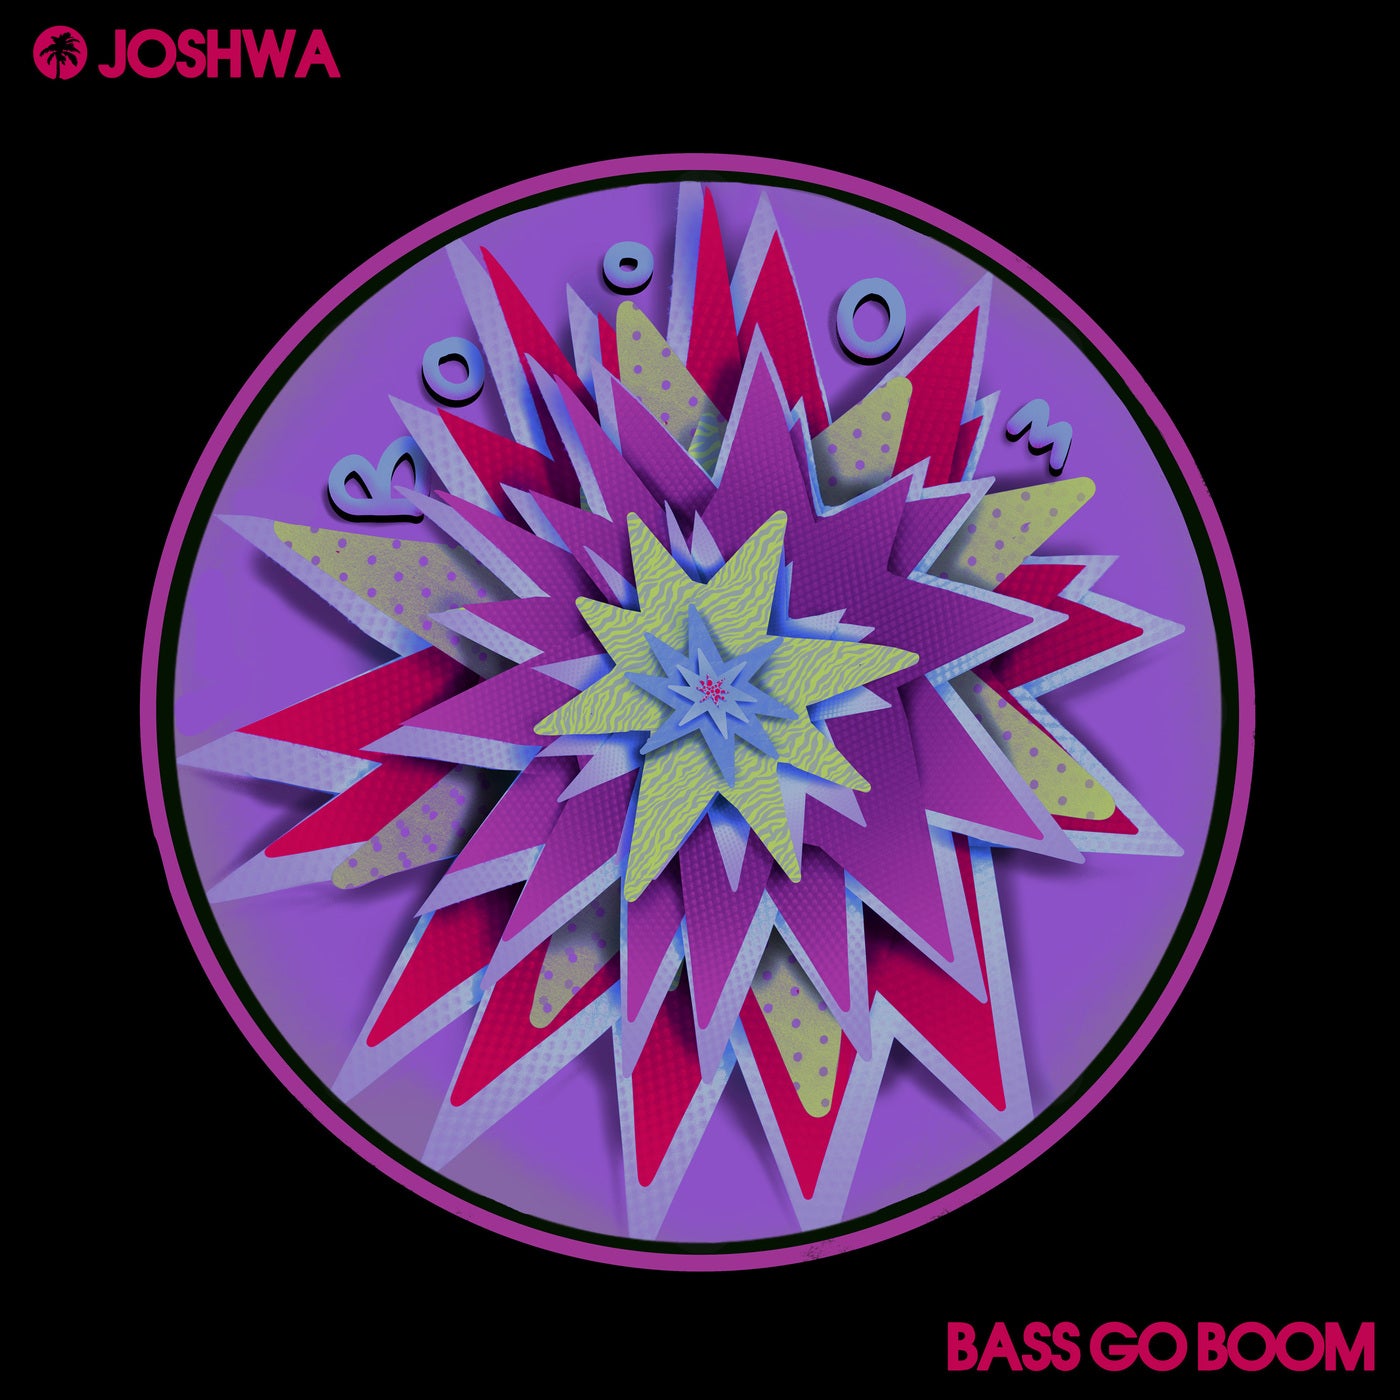 Bass Go Boom (Original Mix)